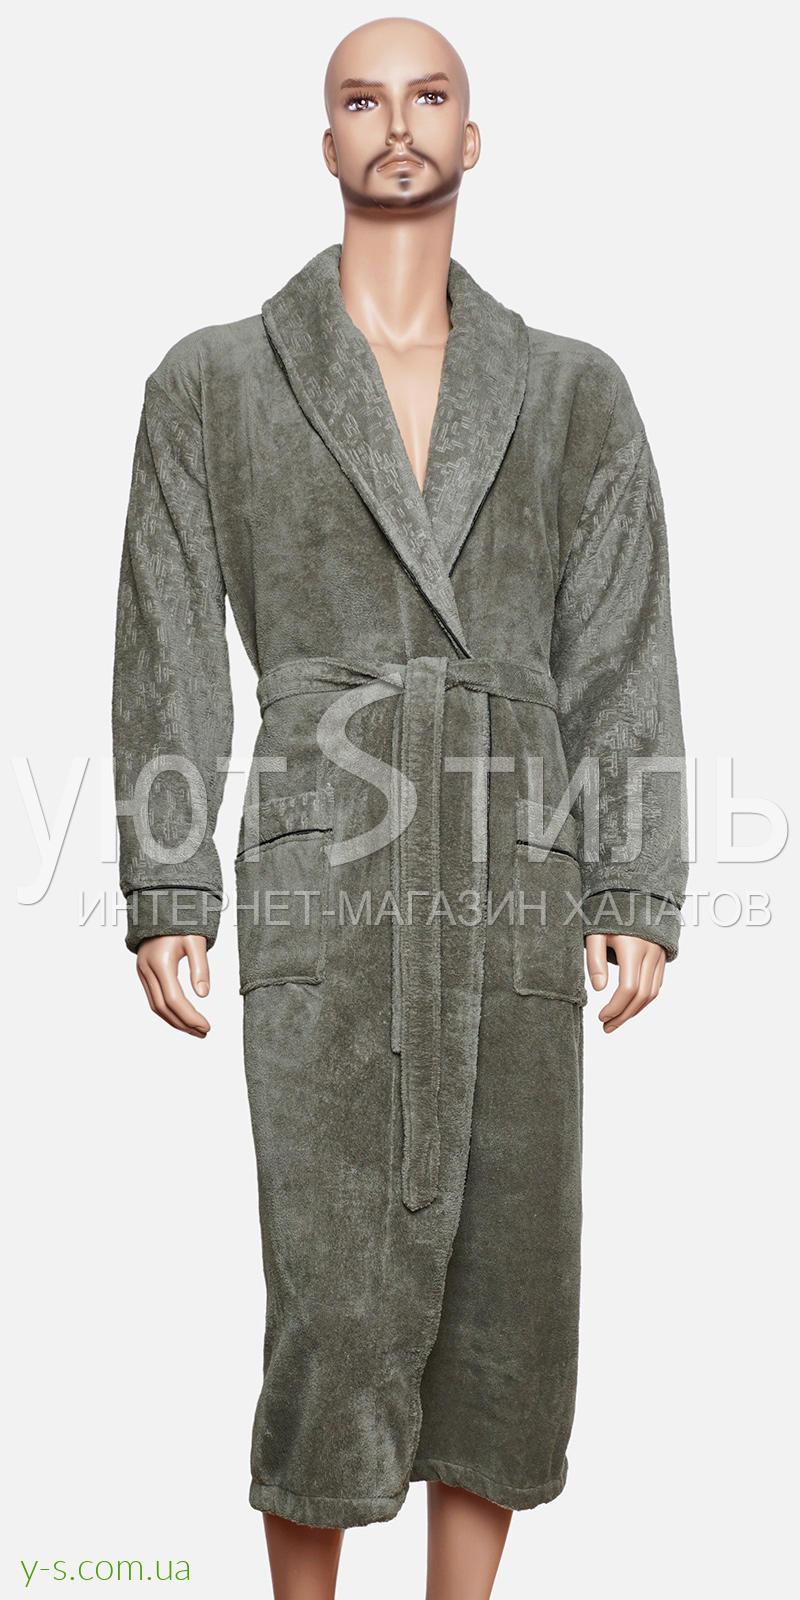 Оливковий бамбуковий халат для чоловіка BE9019